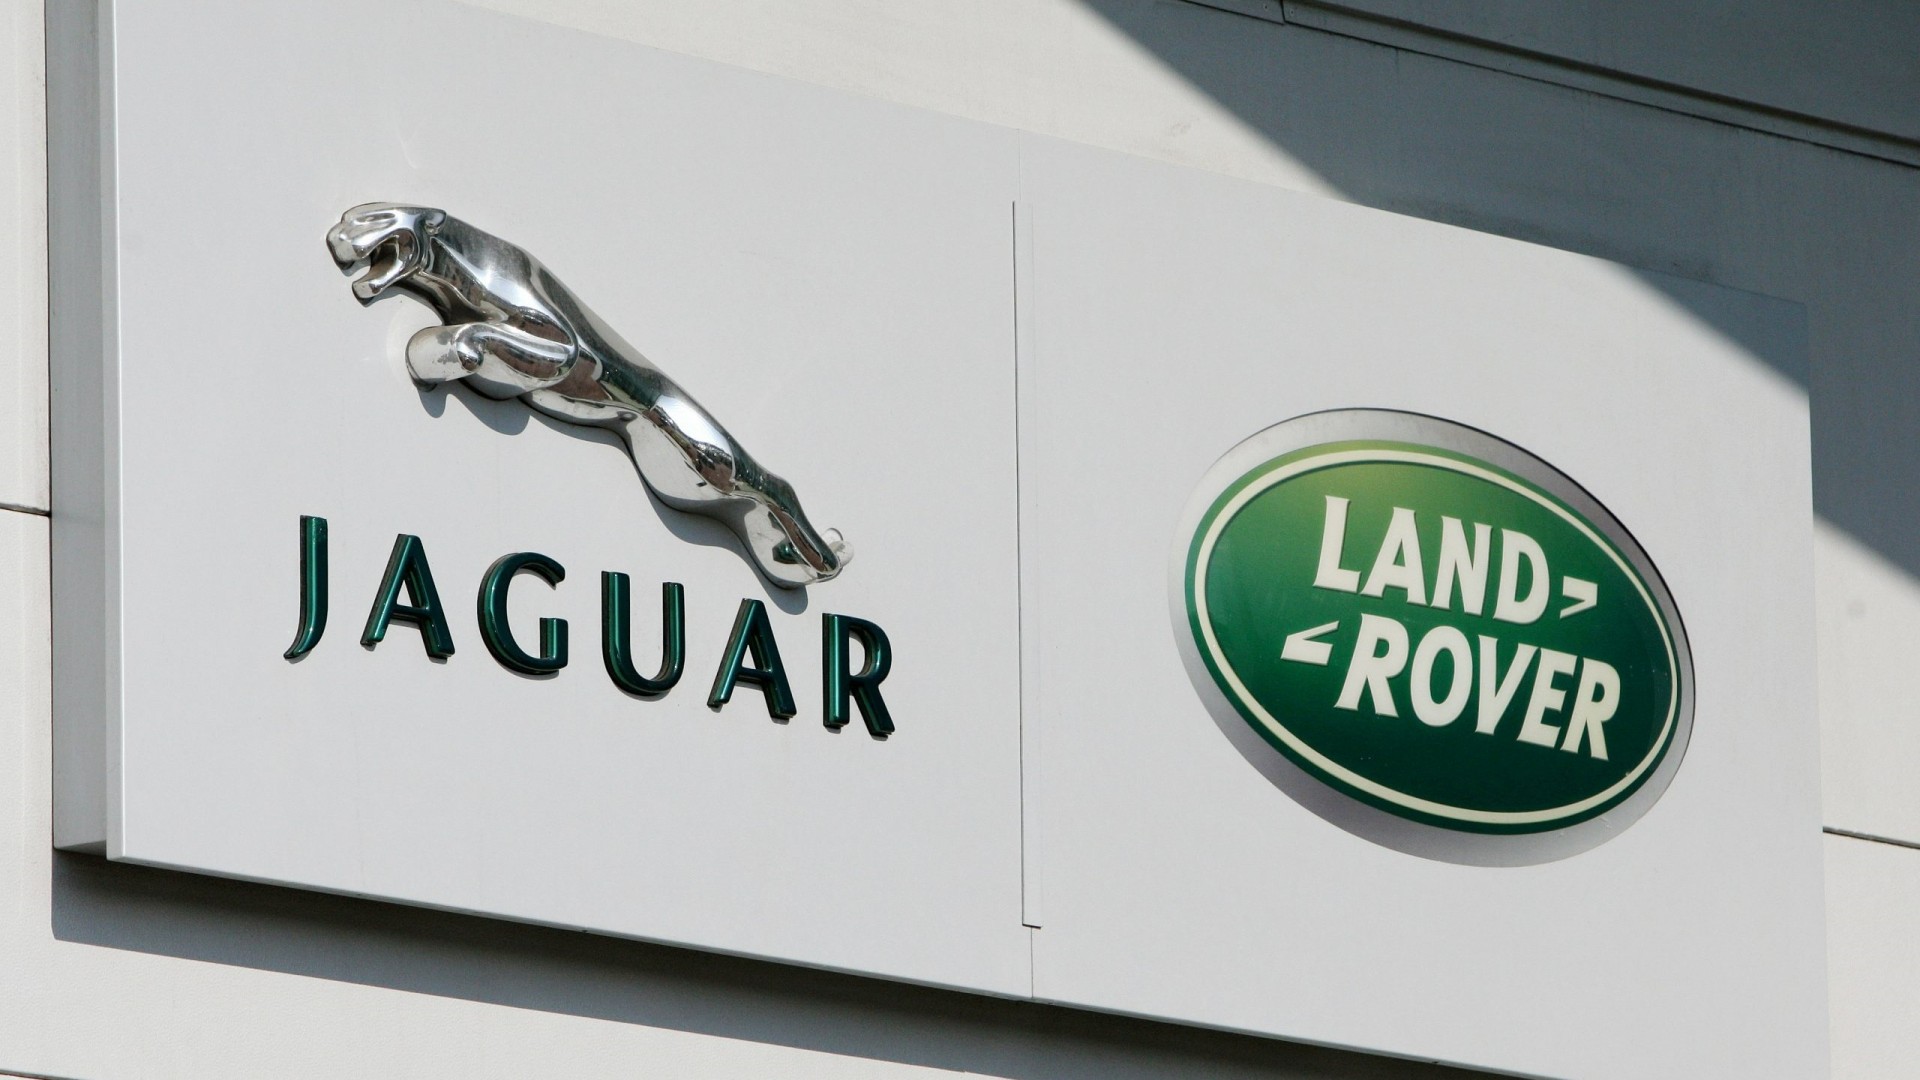 La prioridad de Jaguar Land Rover pasa por mejorar la calidad y fiabilidad de sus productos